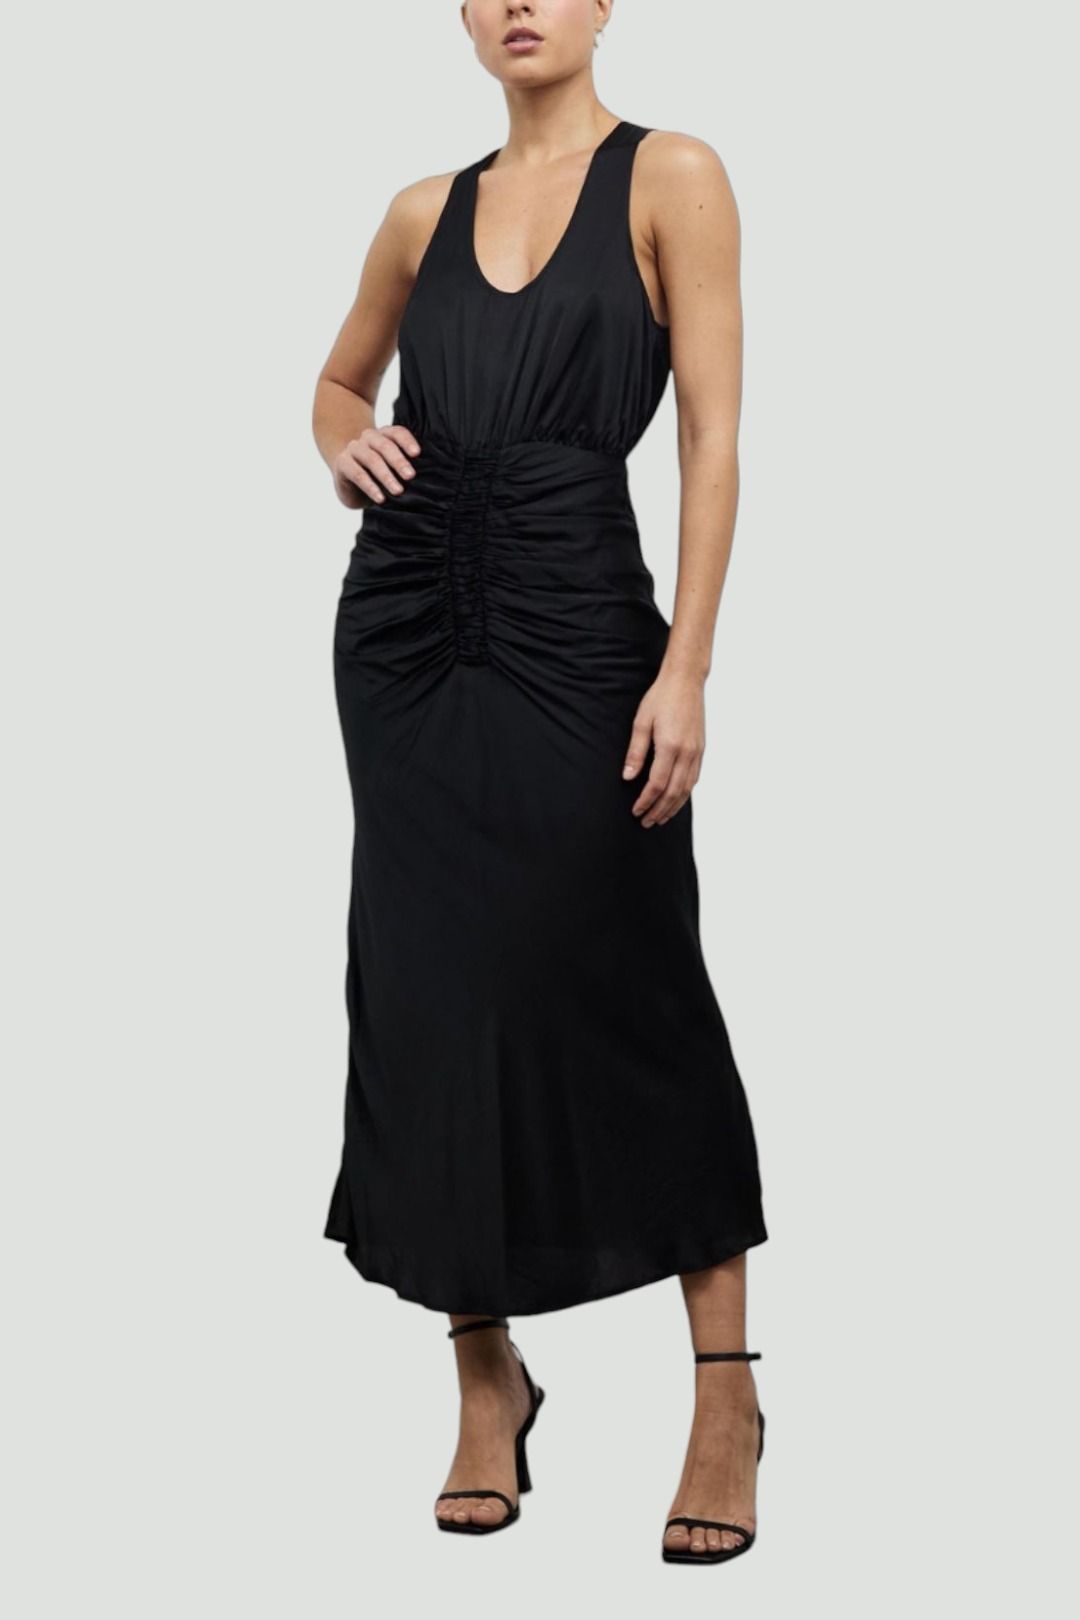 Lover Junie Midi Dress in Black